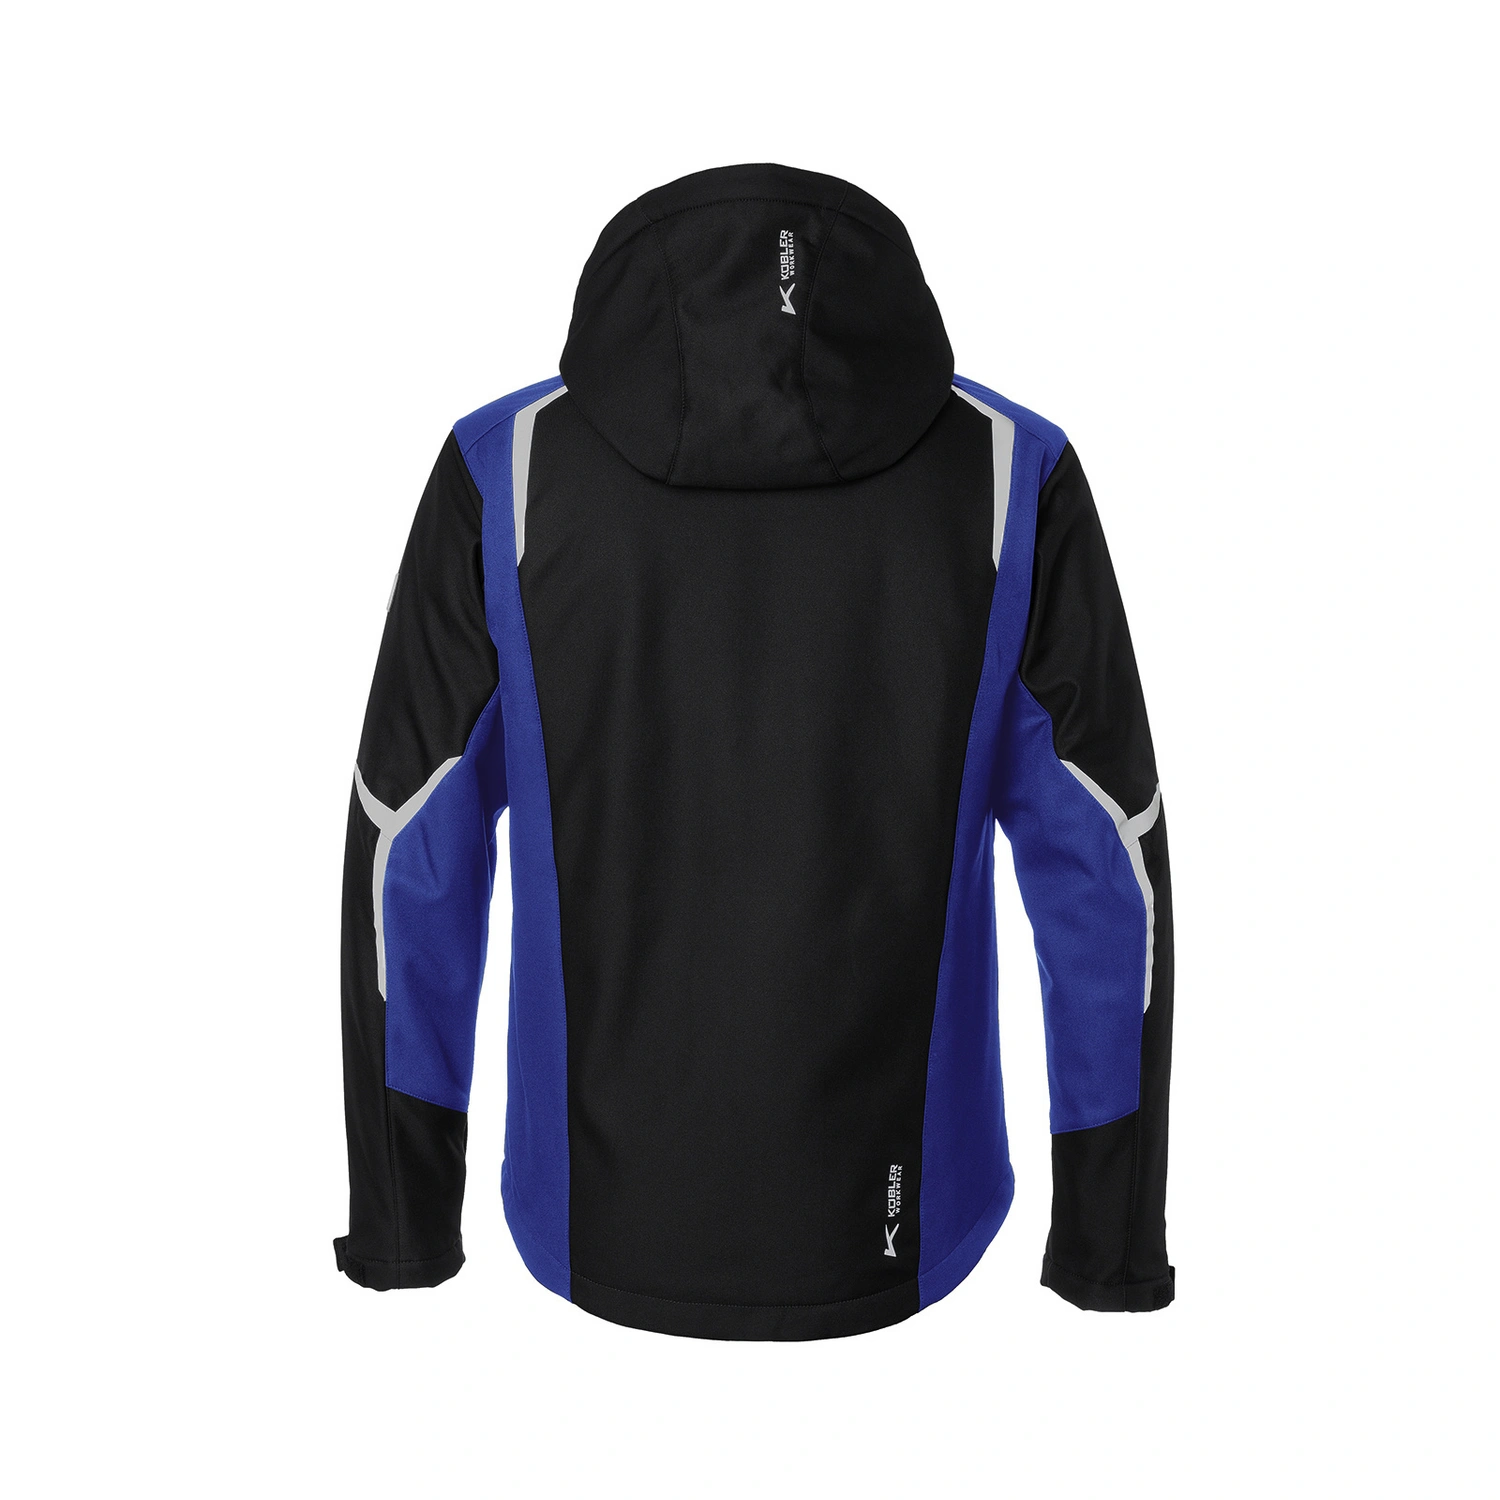 KÜBLER Jacke »BODYFORCE«, Polyester, schwarz/blau